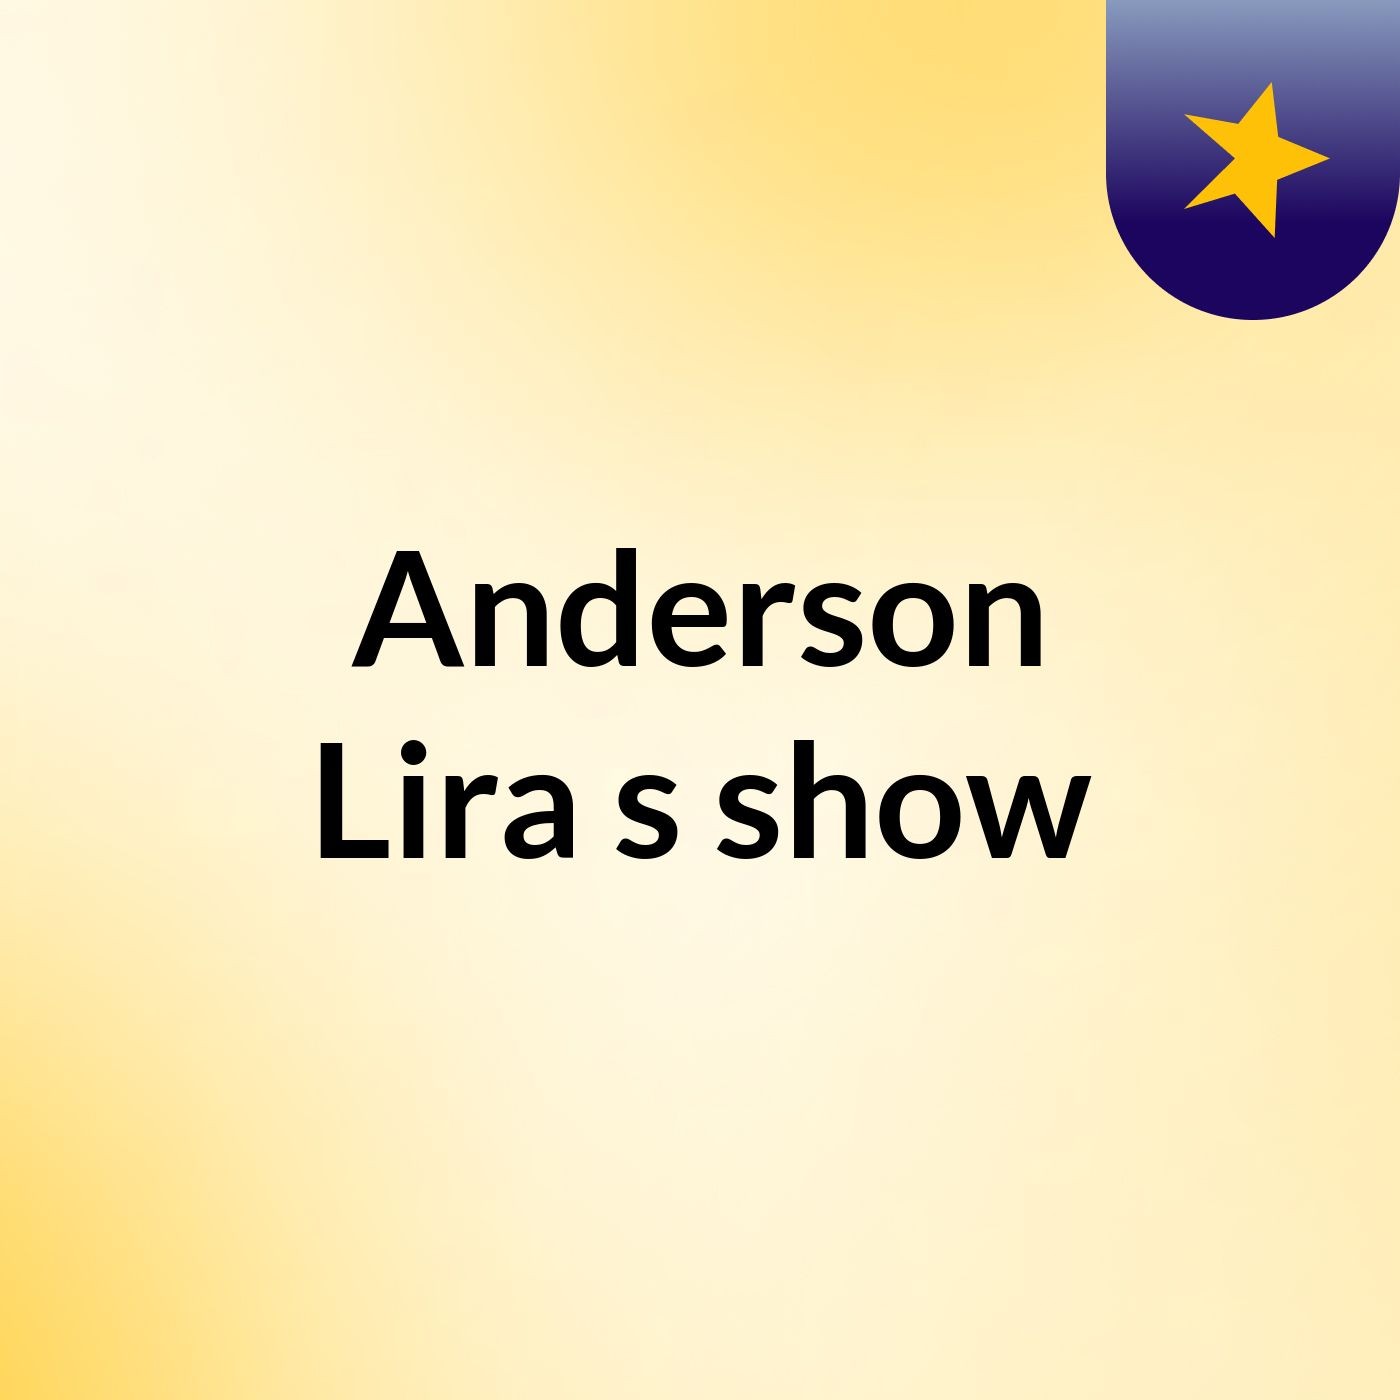 Anderson Lira's show